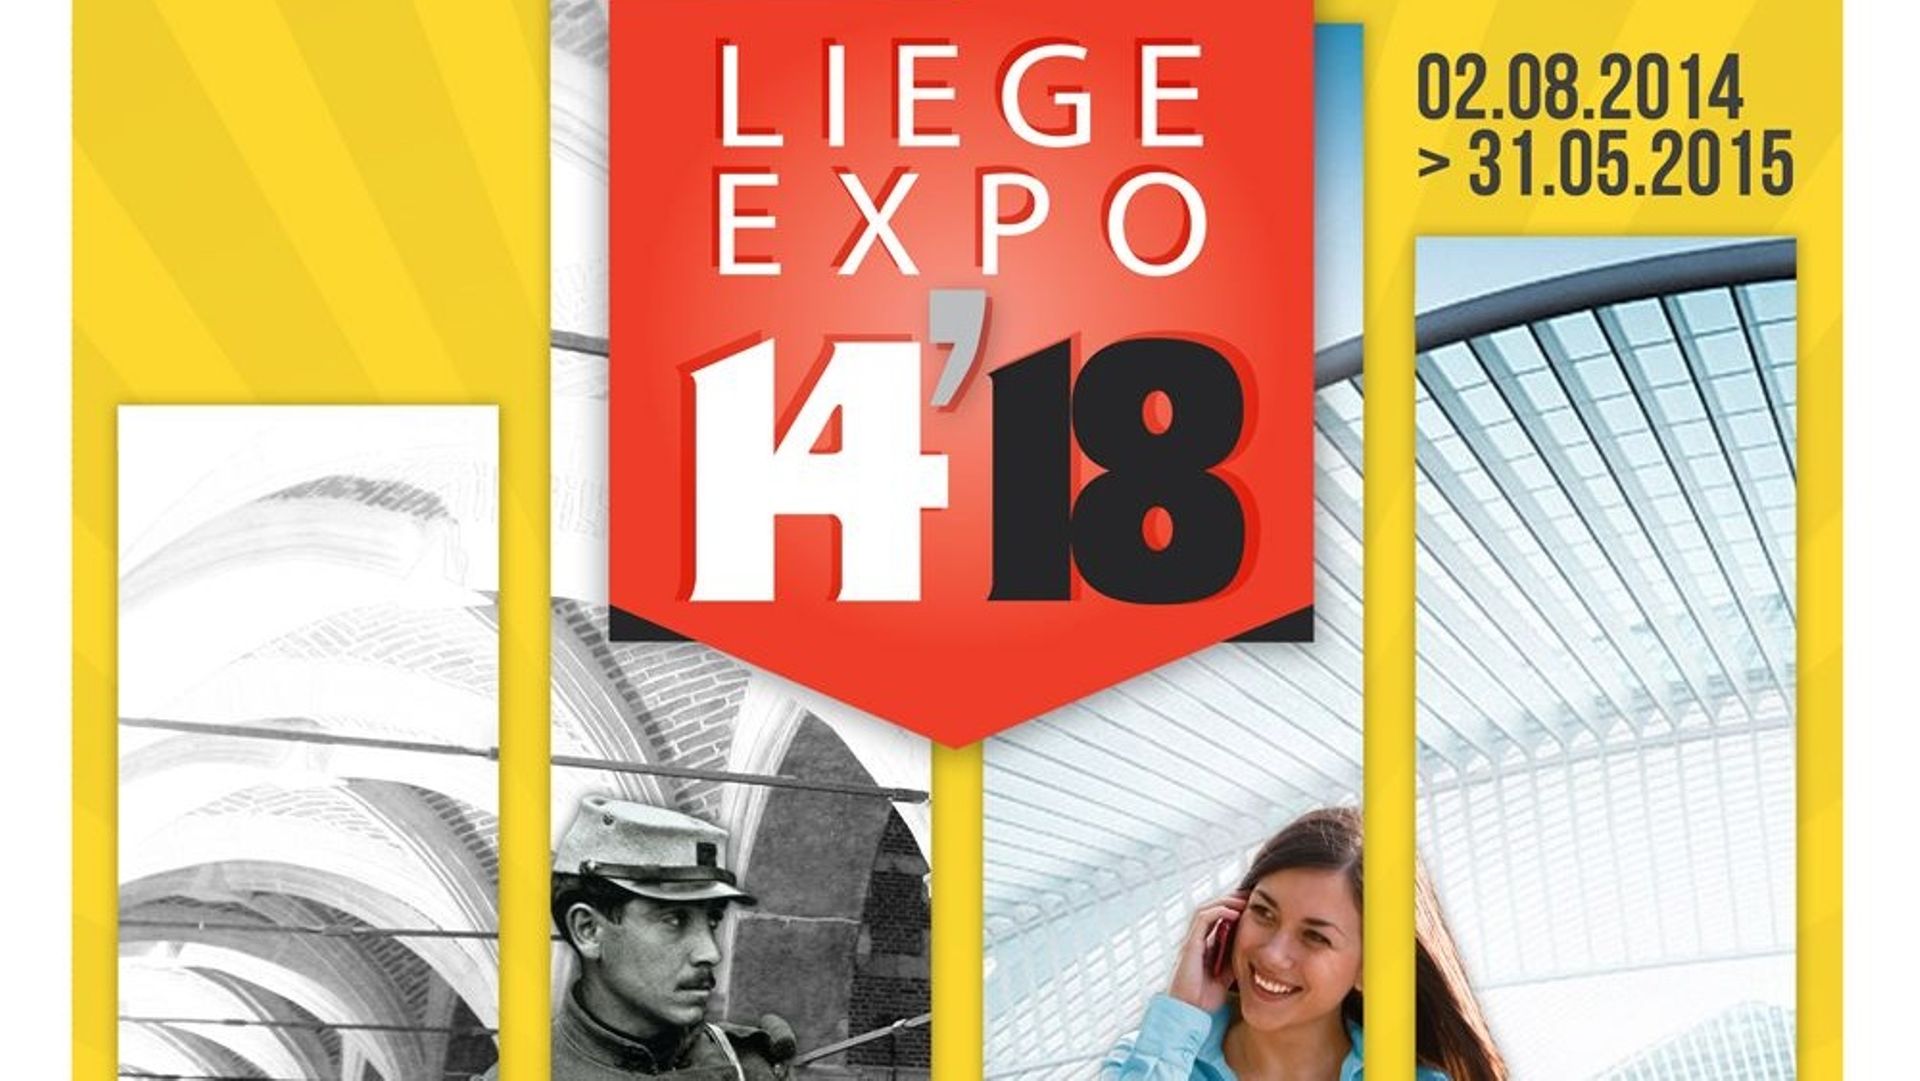 Centenaire de la Première Guerre mondiale - Les deux expositions sur la guerre 14-18 à Liège se dévoilent